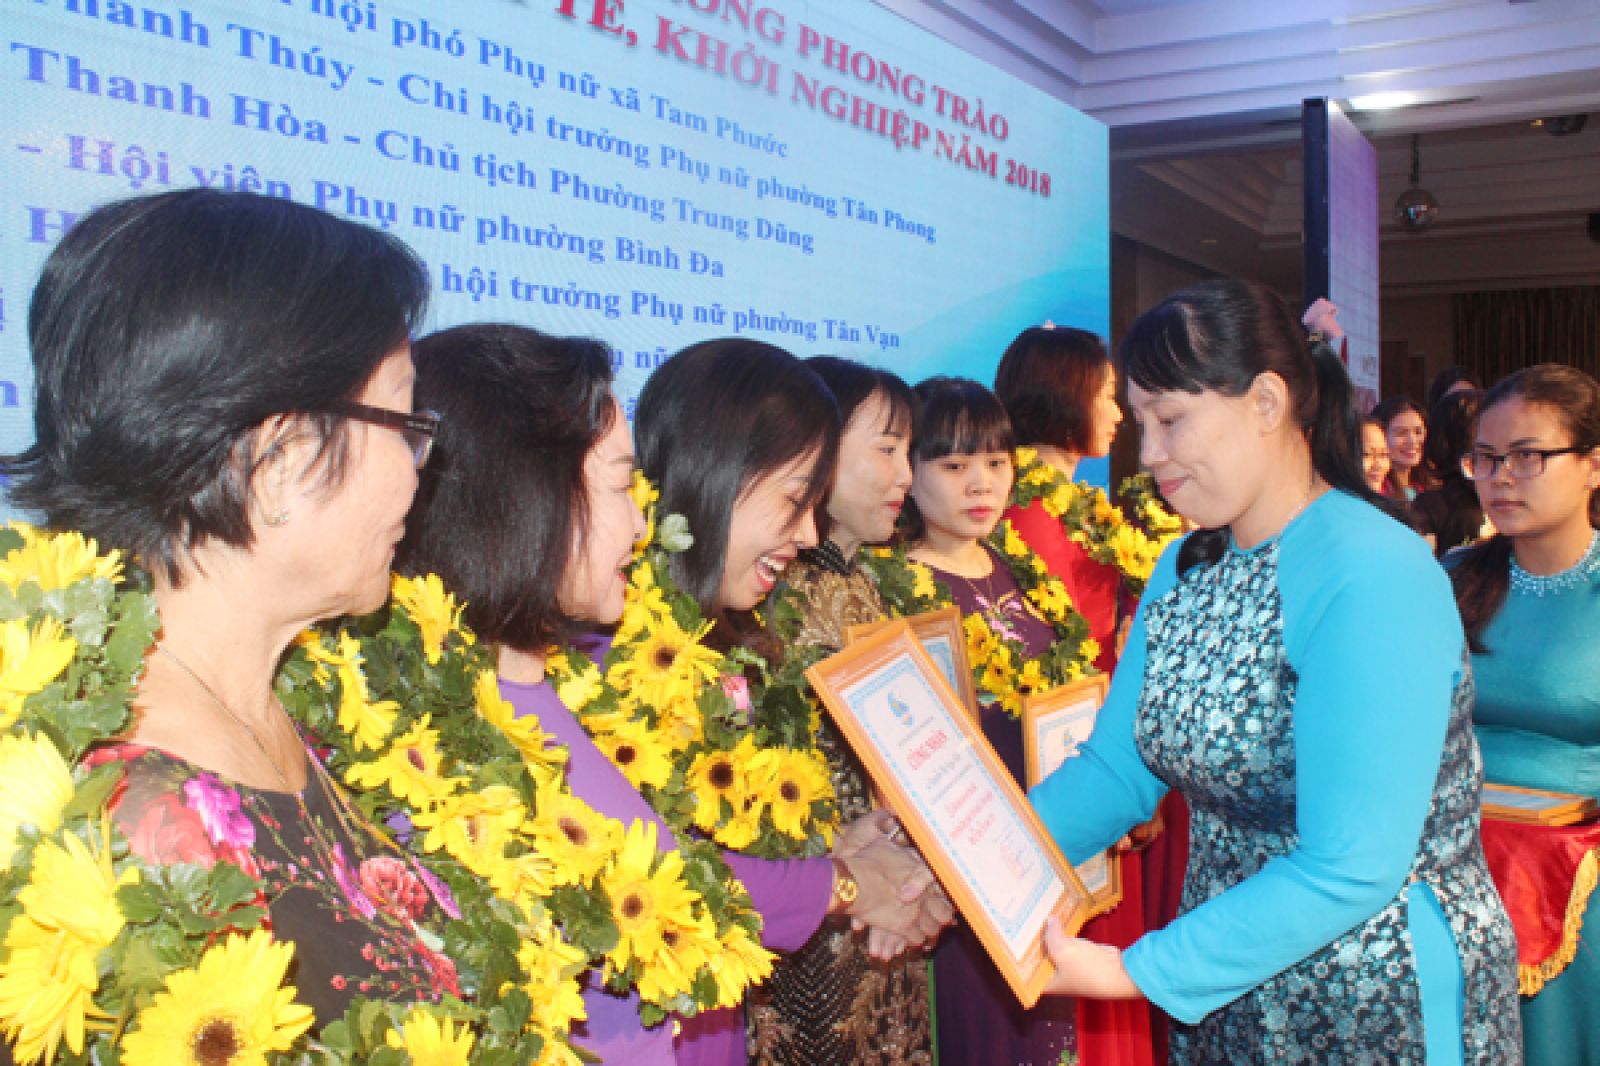 Phó chủ tịch thường trực Hội Liên hiệp phụ nữ tỉnh Lê Thị Thái trao giấy công nhận điển hình phụ nữ tiêu biểu trong phát triển kinh tế, khởi nghiệp.